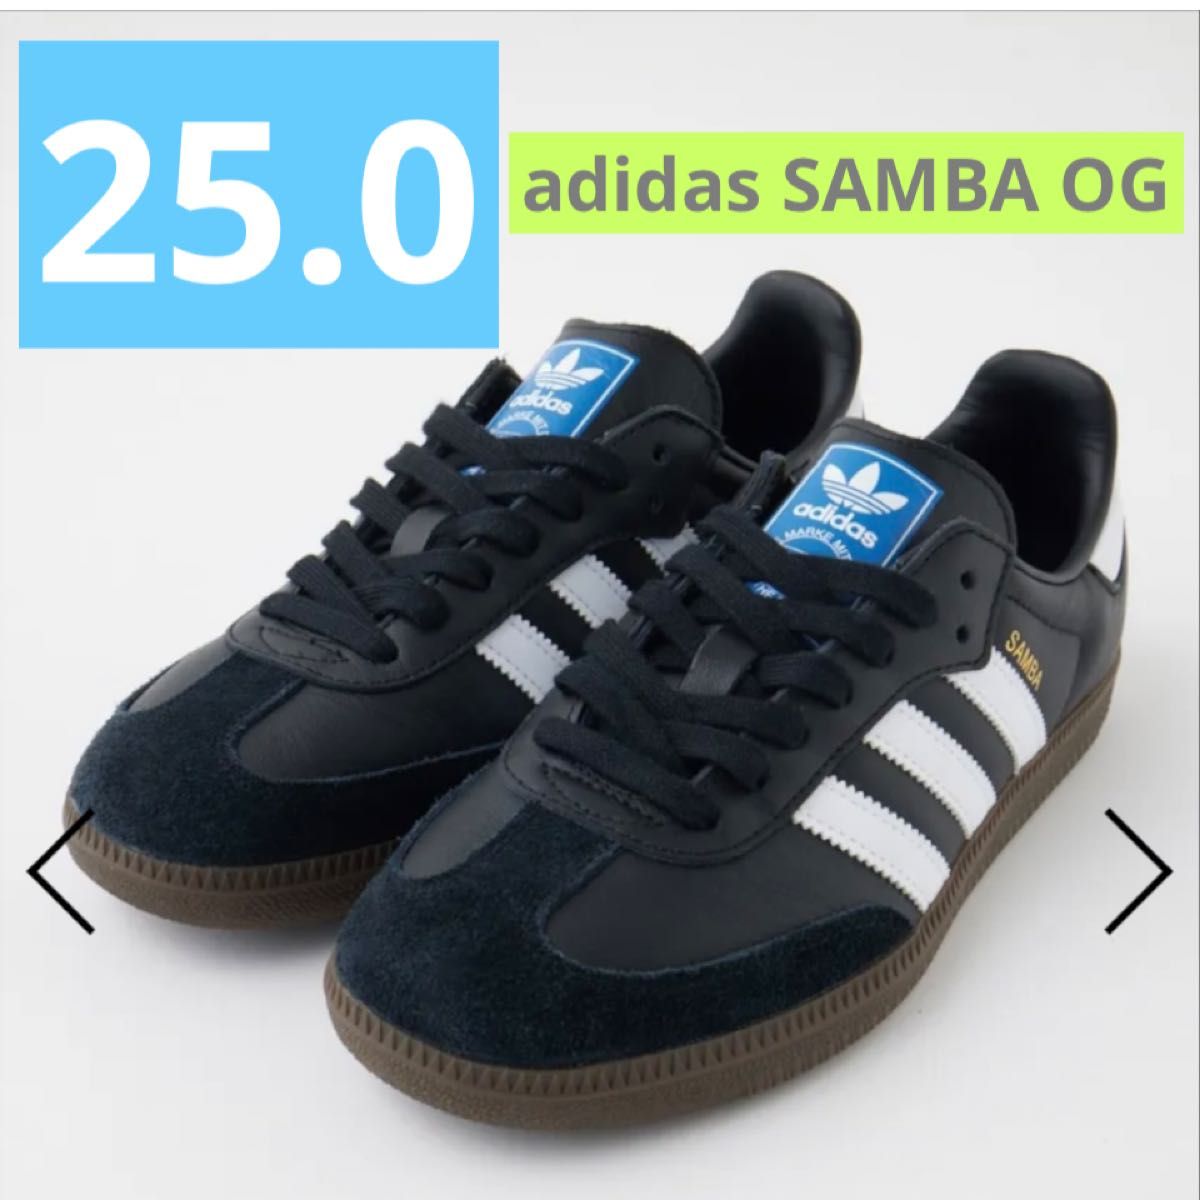 adidas Samba OG アディダス サンバ OG ブラック 25 0cm スニーカー